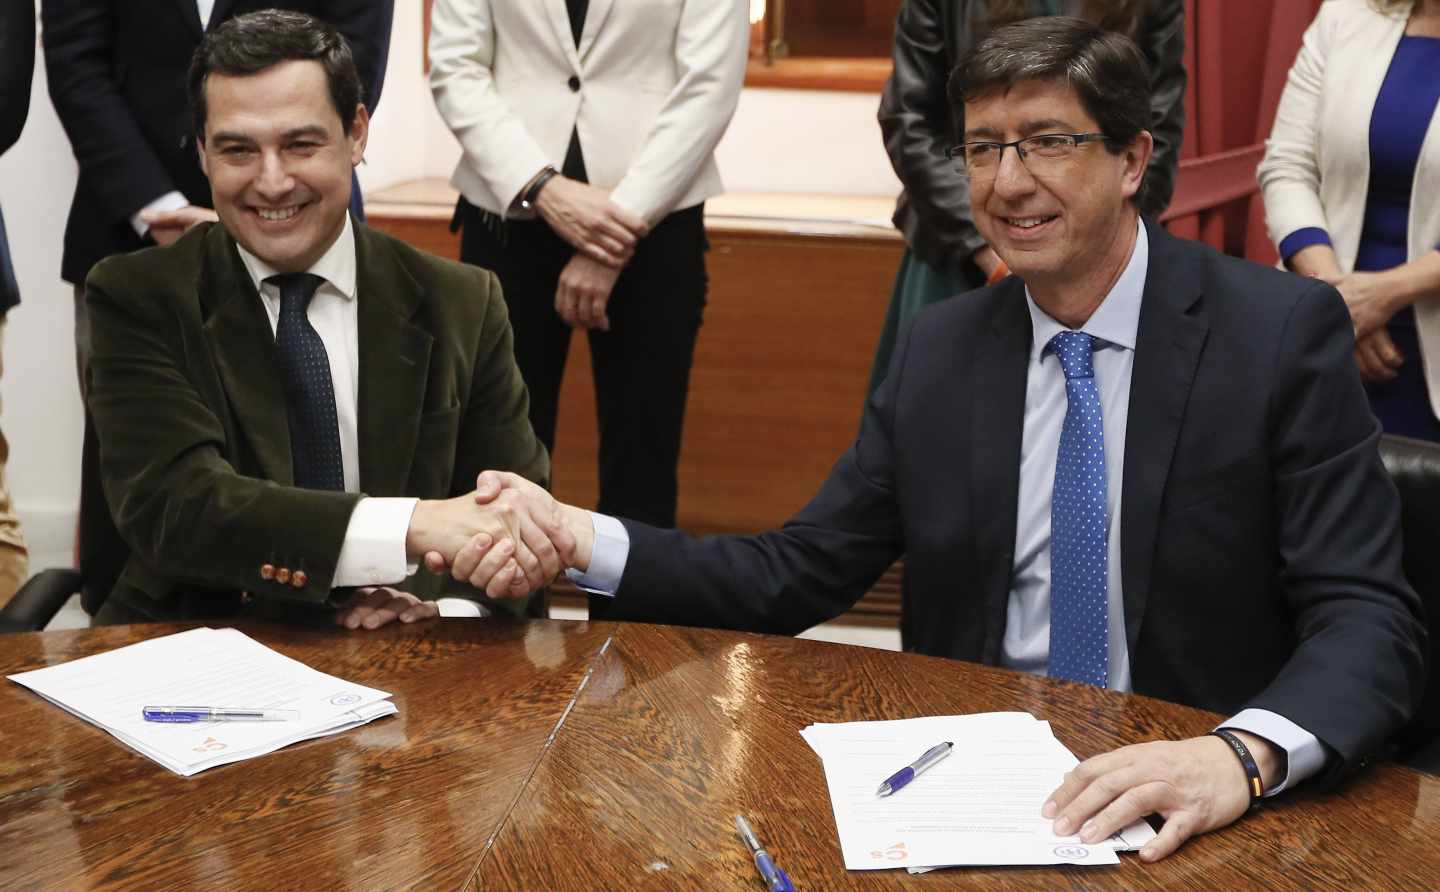 Juan Manuel Moreno Bonilla y Juan Marín se estrechan la mano en el Parlamento andaluz.